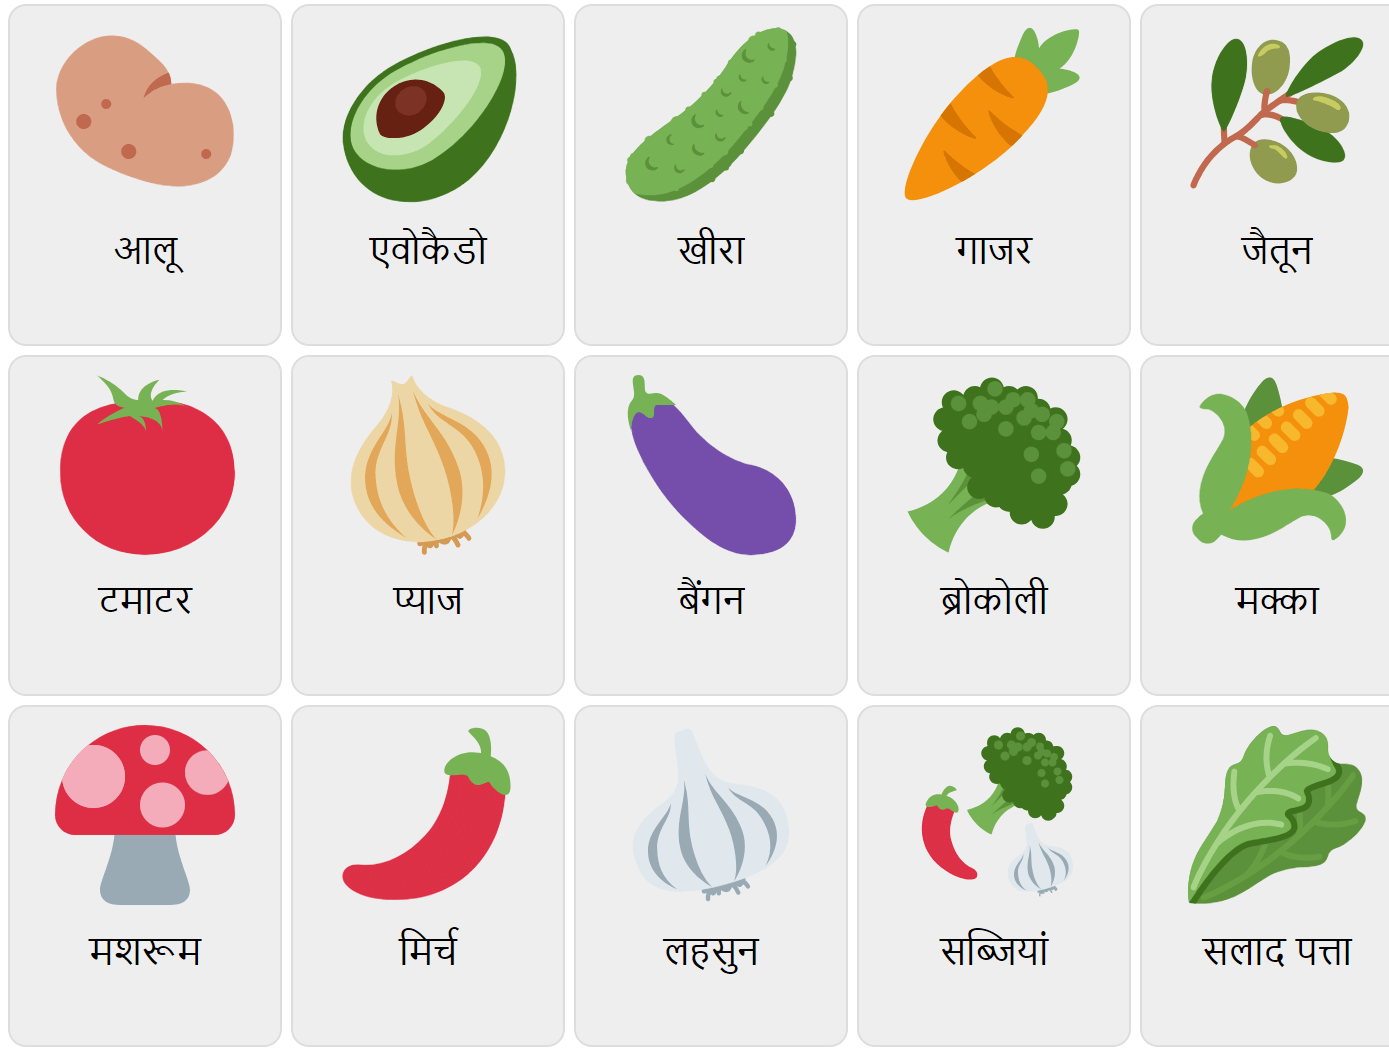 Vegetables in Hindi